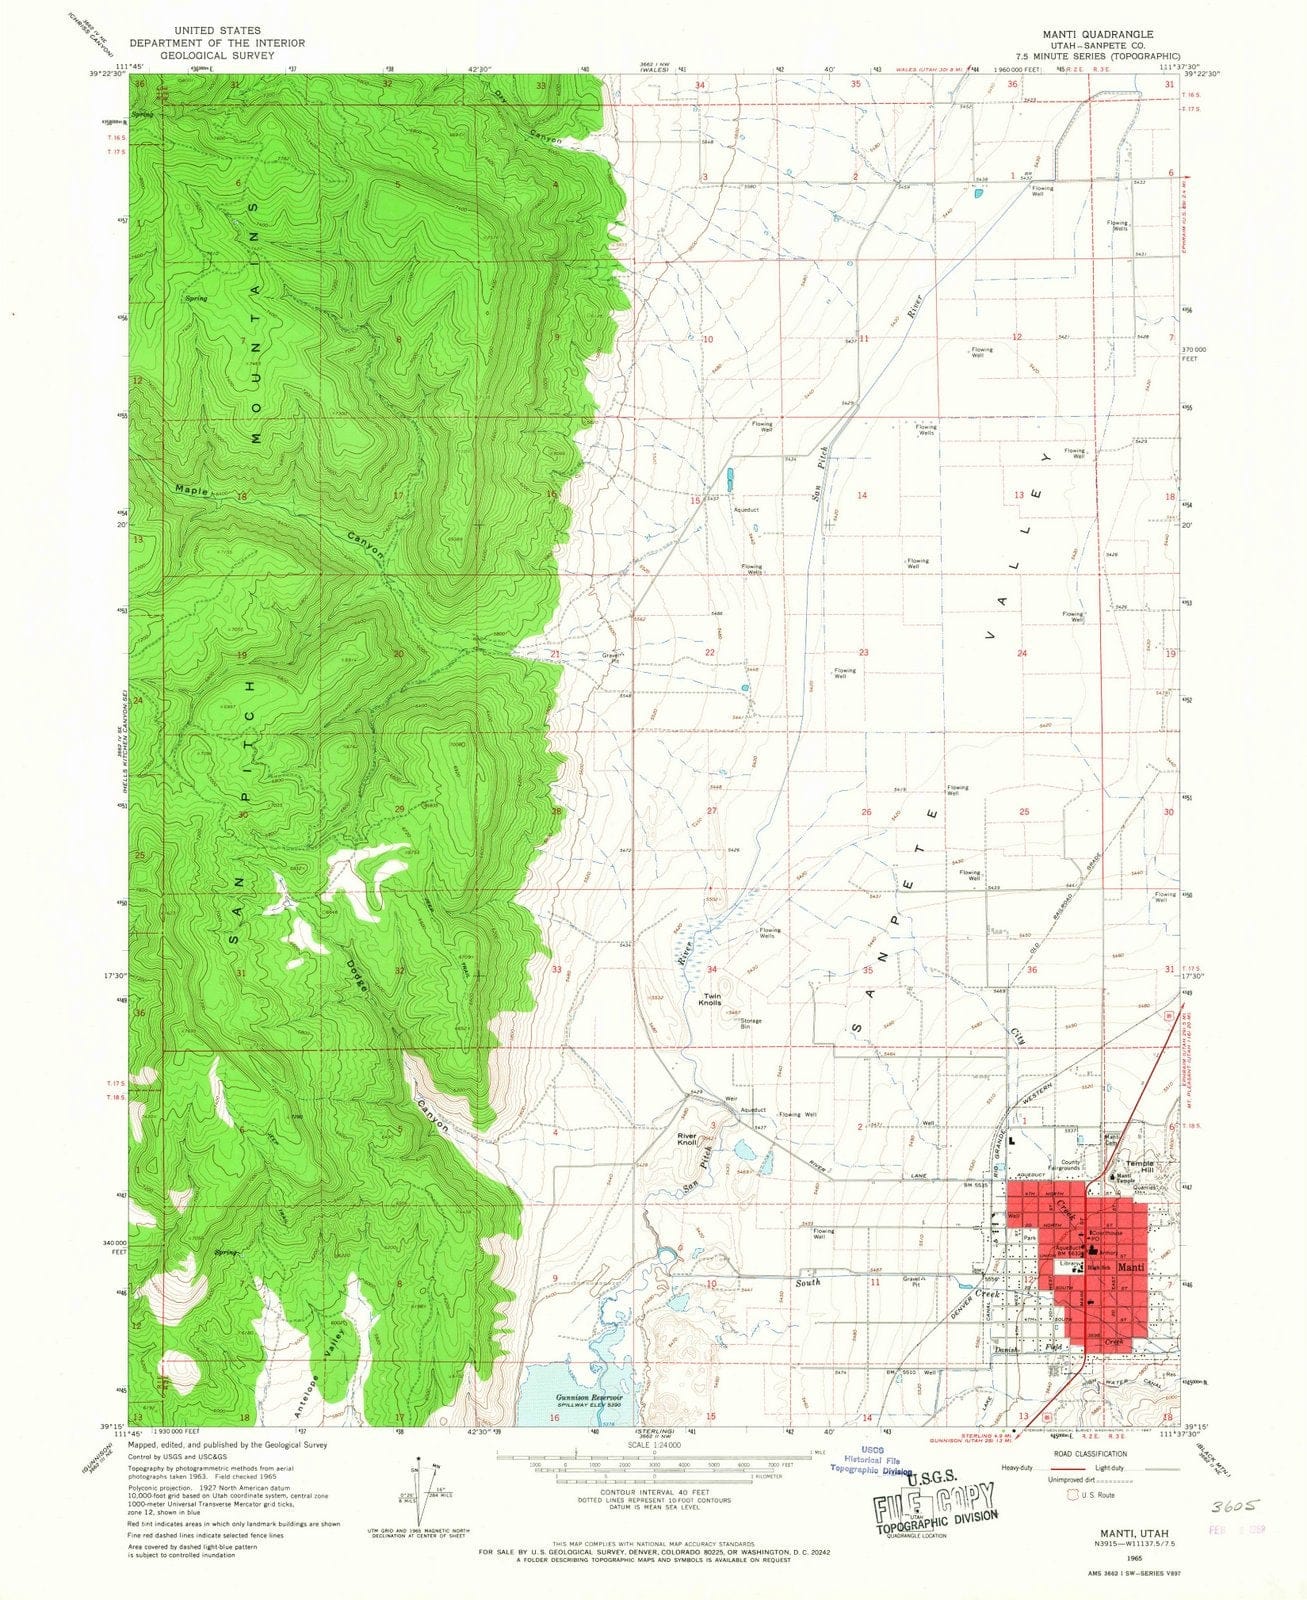 1965 Manti, UT - Utah - USGS Topographic Map